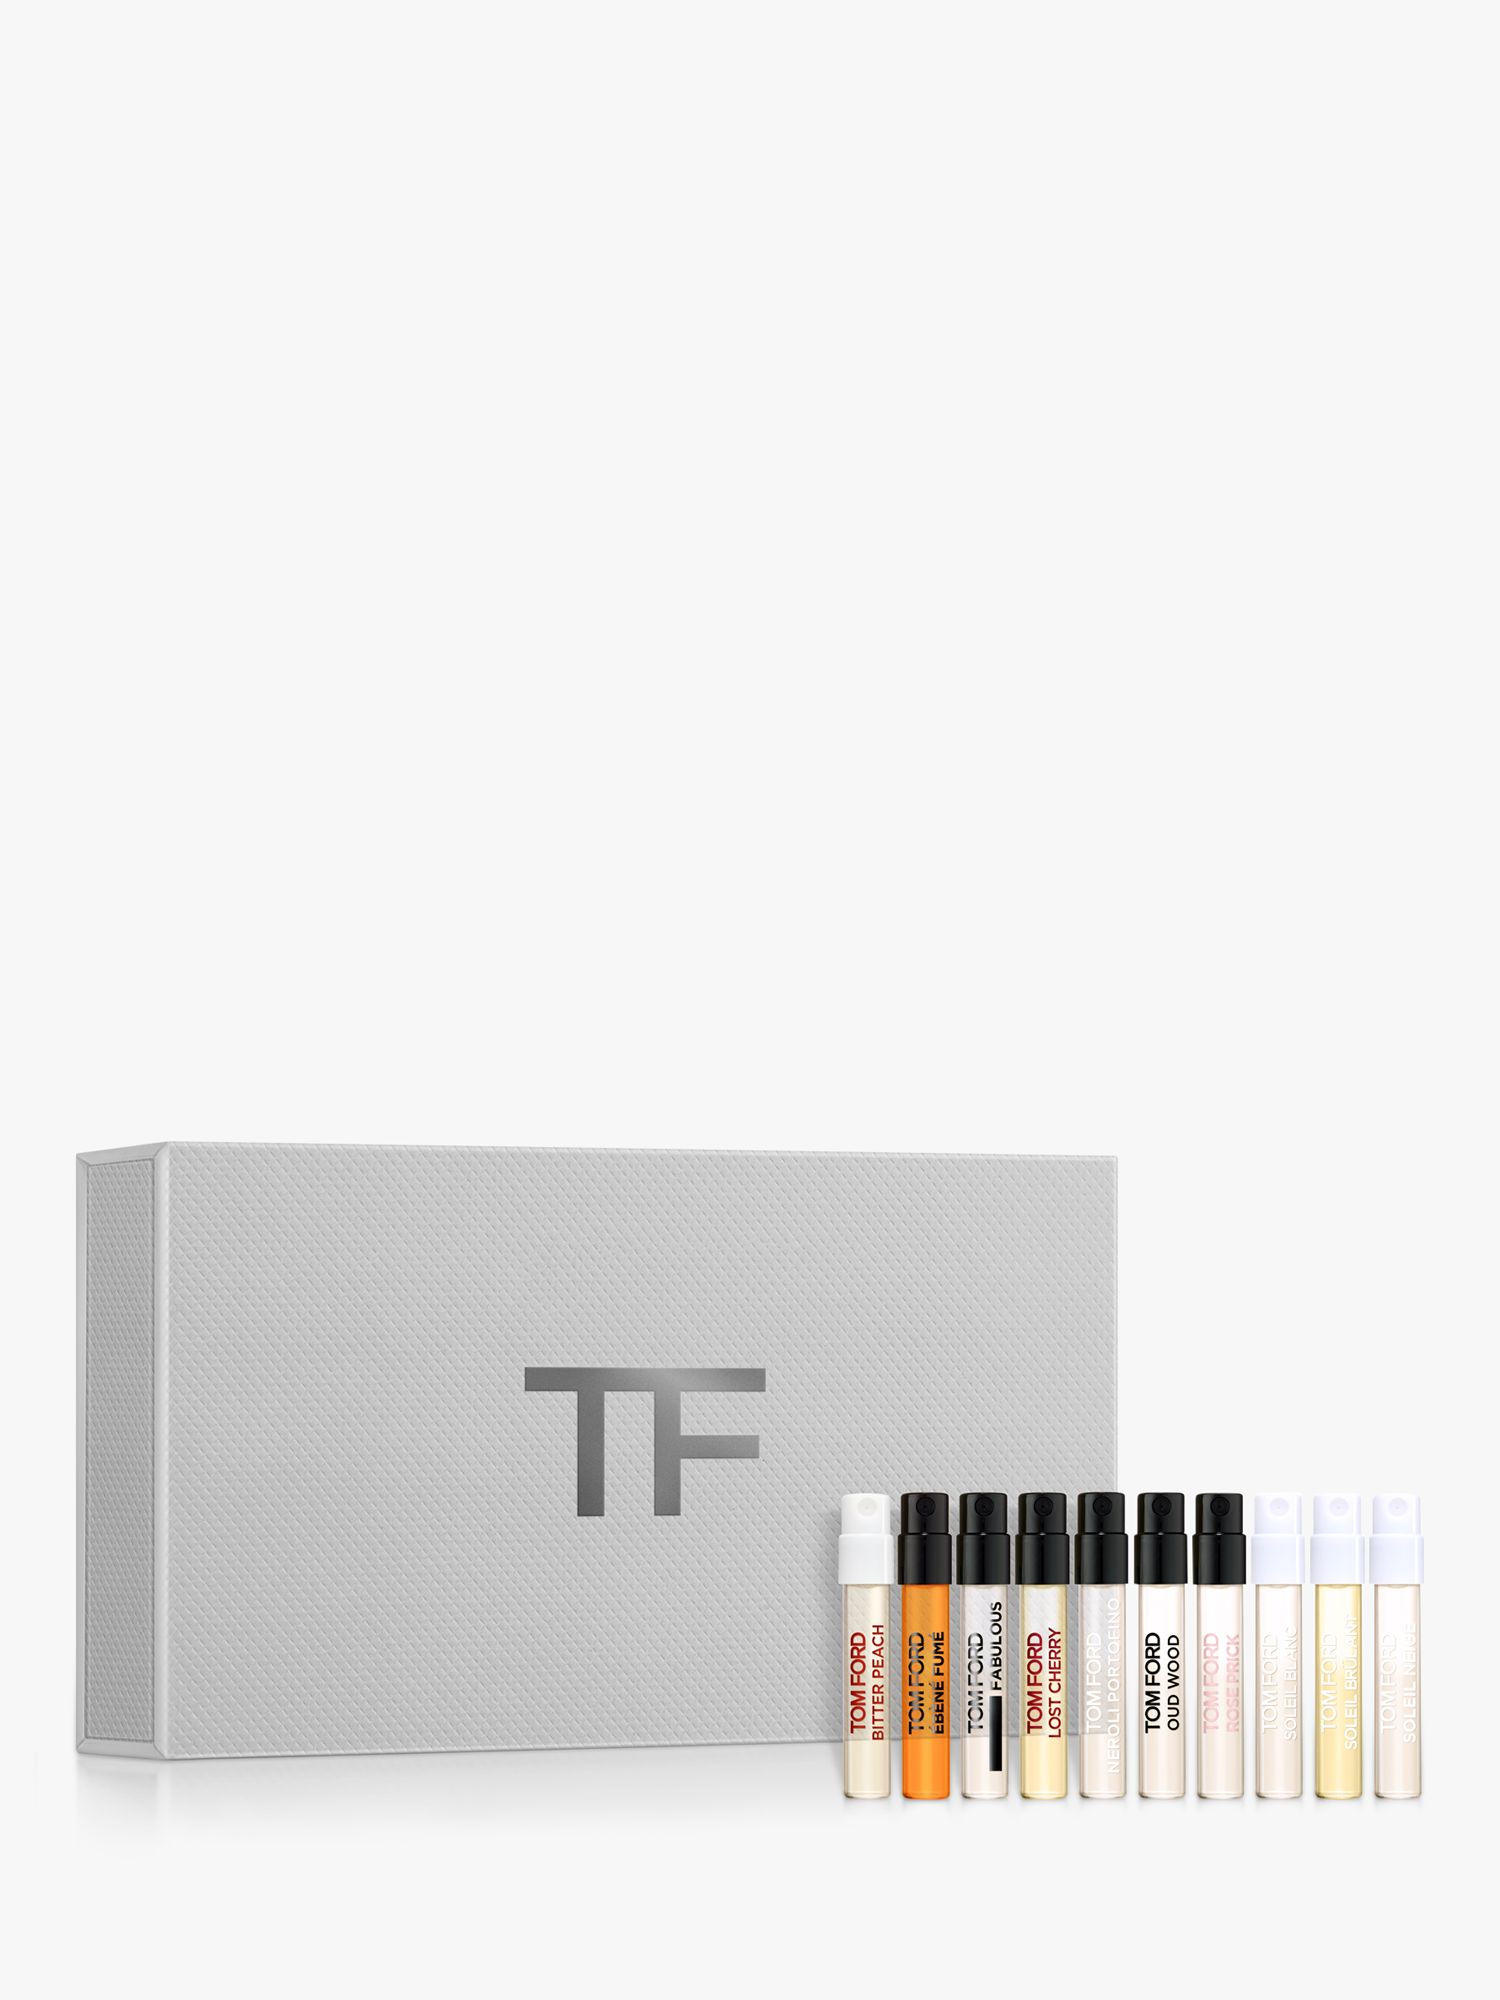 TOM FORD Private Blend Eau de Parfum Sampler Fragrance Gift Set